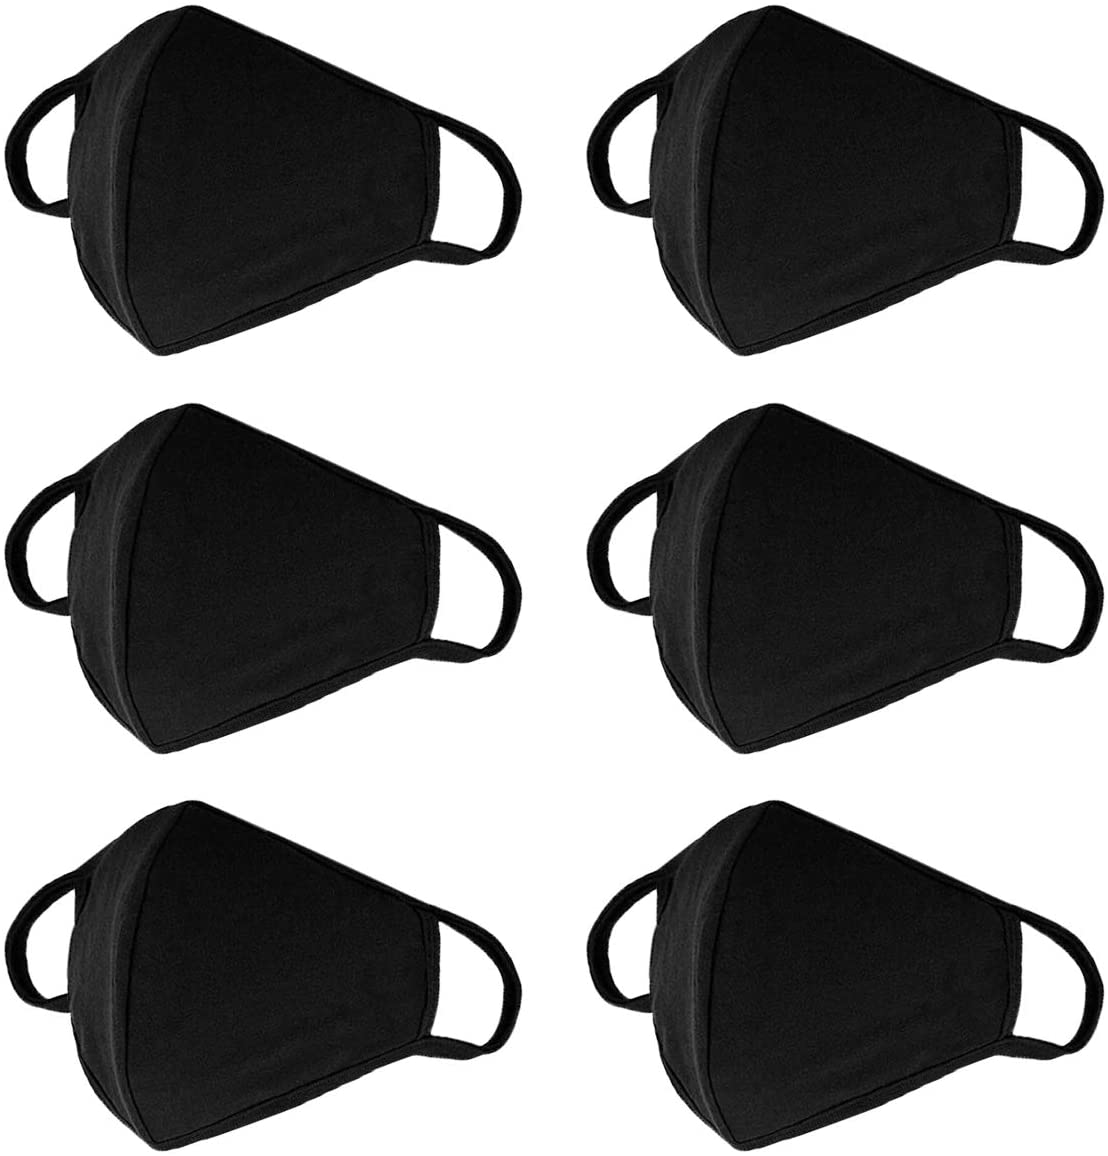 MF-02B noir masque facial coton 3 couches, (2pcs) avec élastiques réglables  oreille, lavable, non médical, unisexe